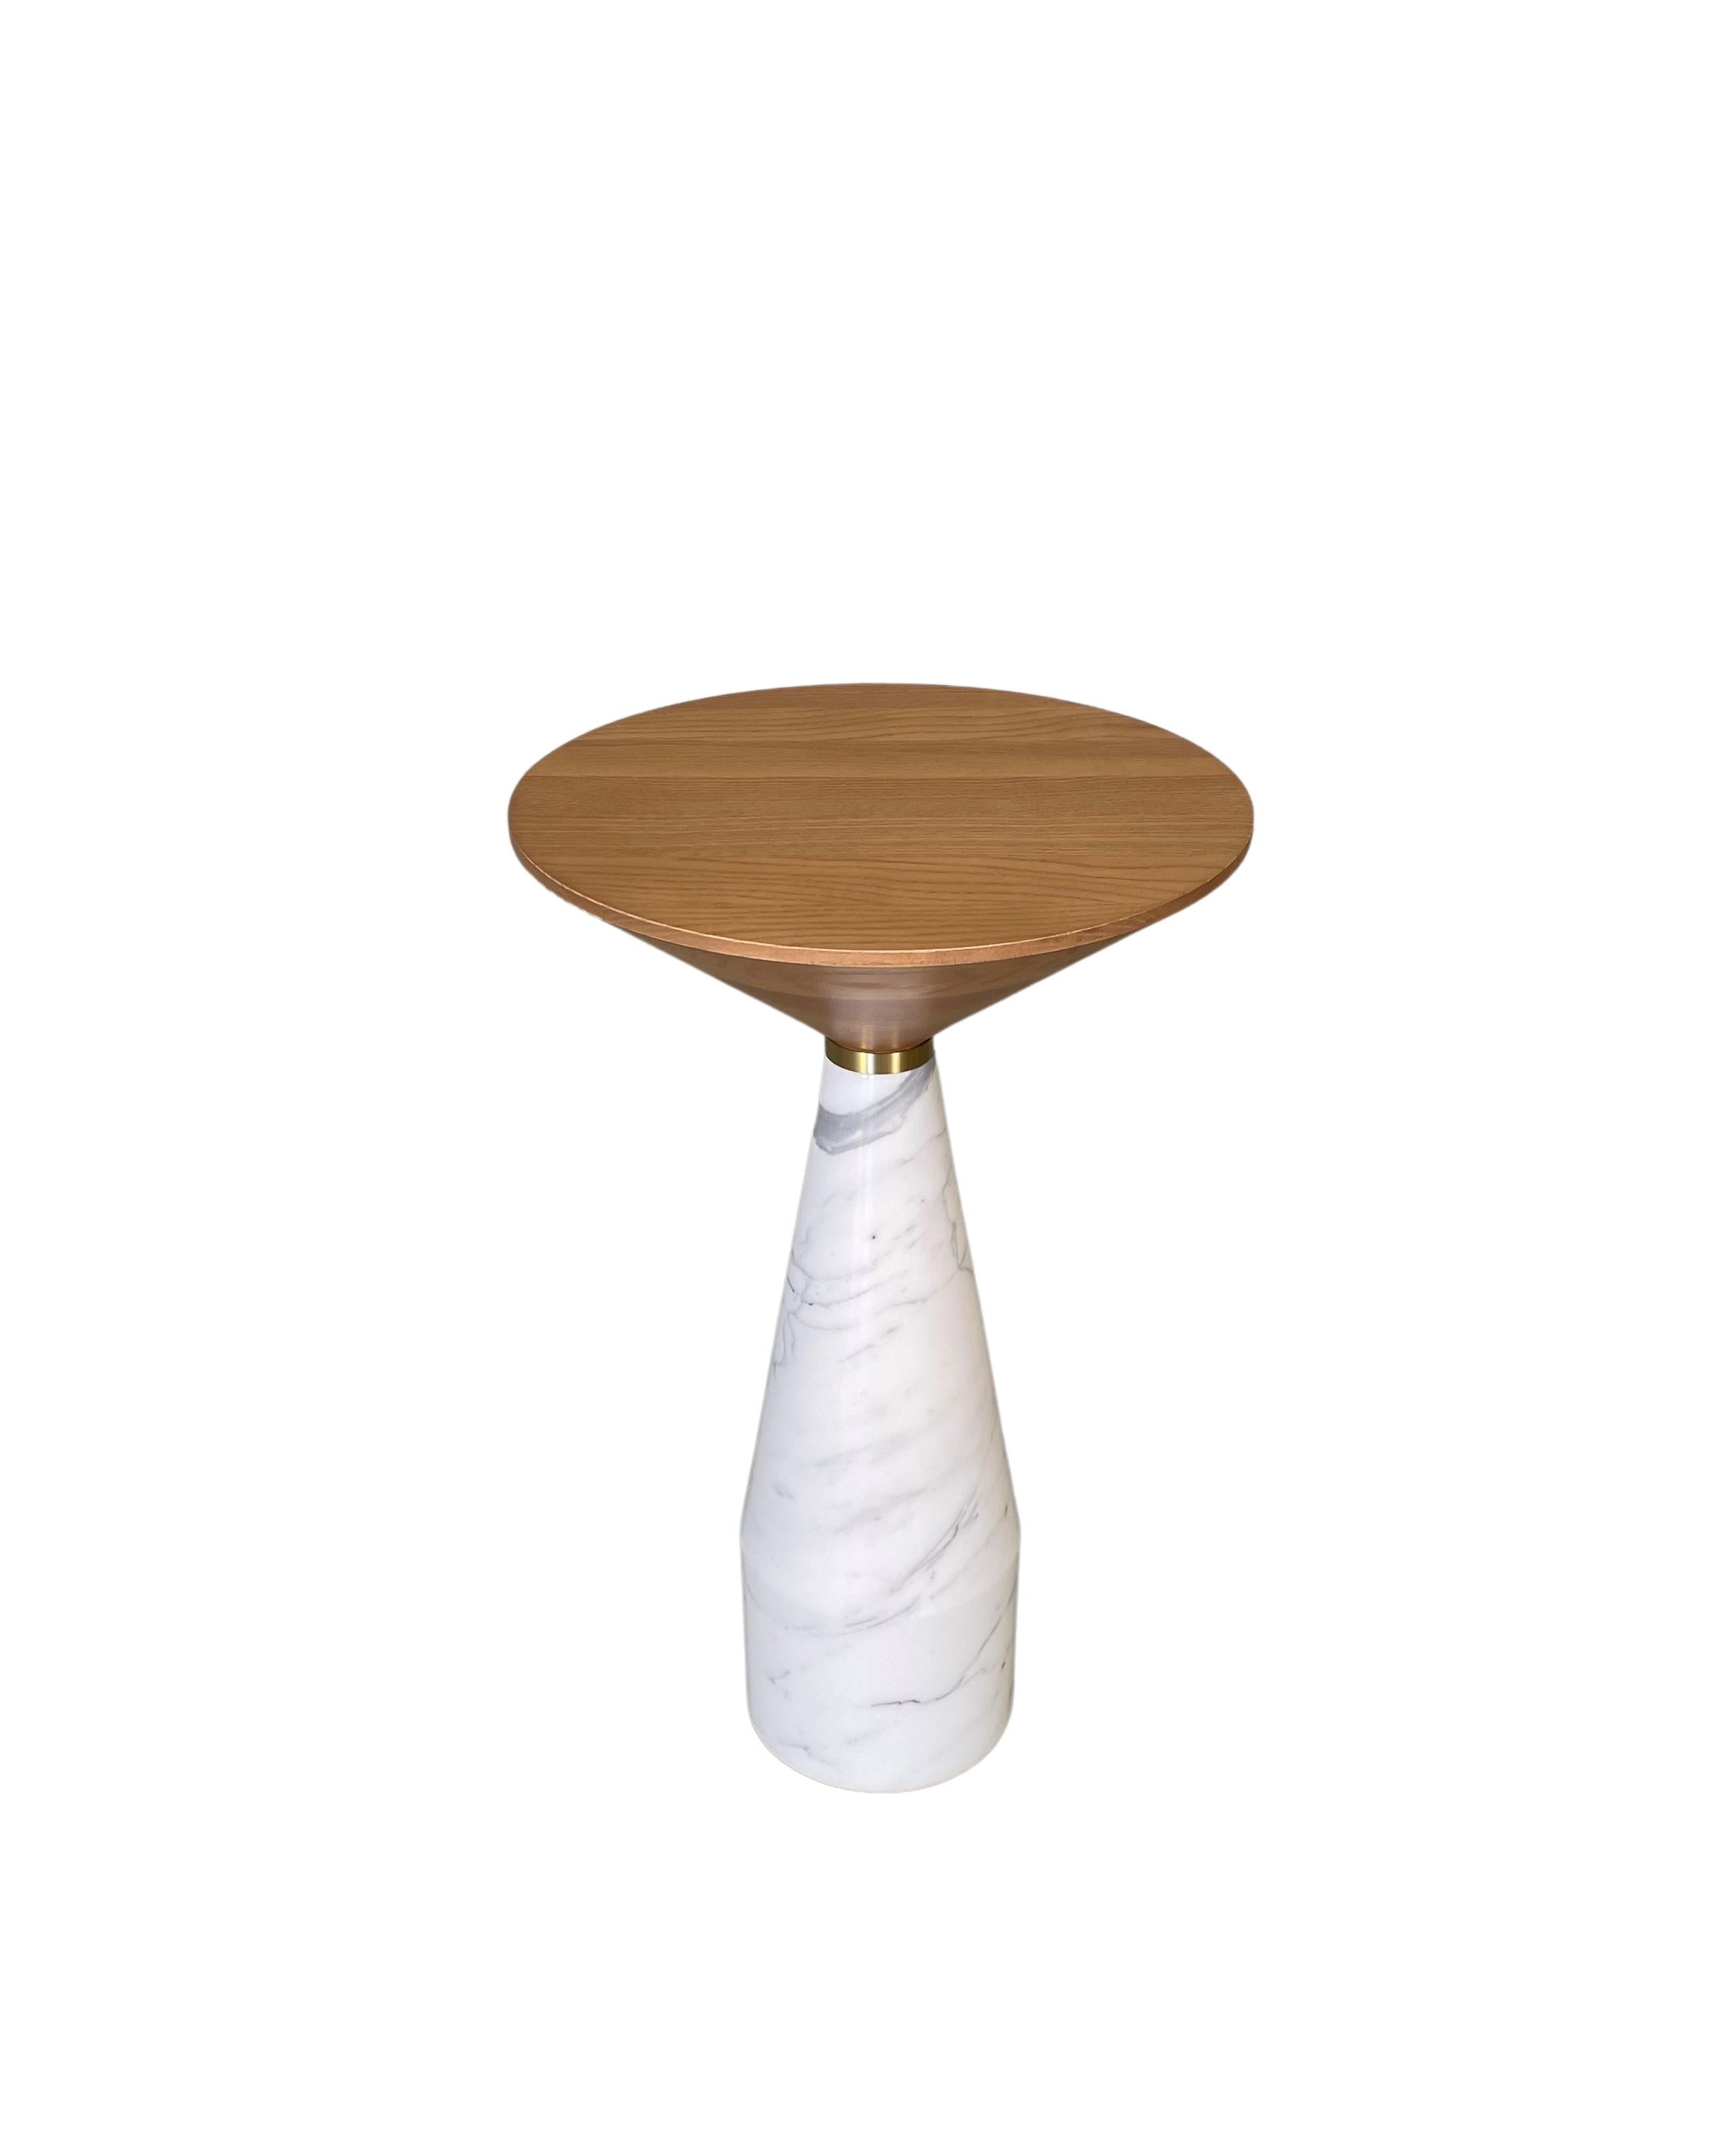 Cino est une nouvelle table conçue par le designer italo-canadien Libero Rutilo pour Morelato
en marbre massif tourné avec plateau tourné à la main en frêne massif, disponible en différentes finitions de bois 
Dimension D 37 H 61 cm 
Poids